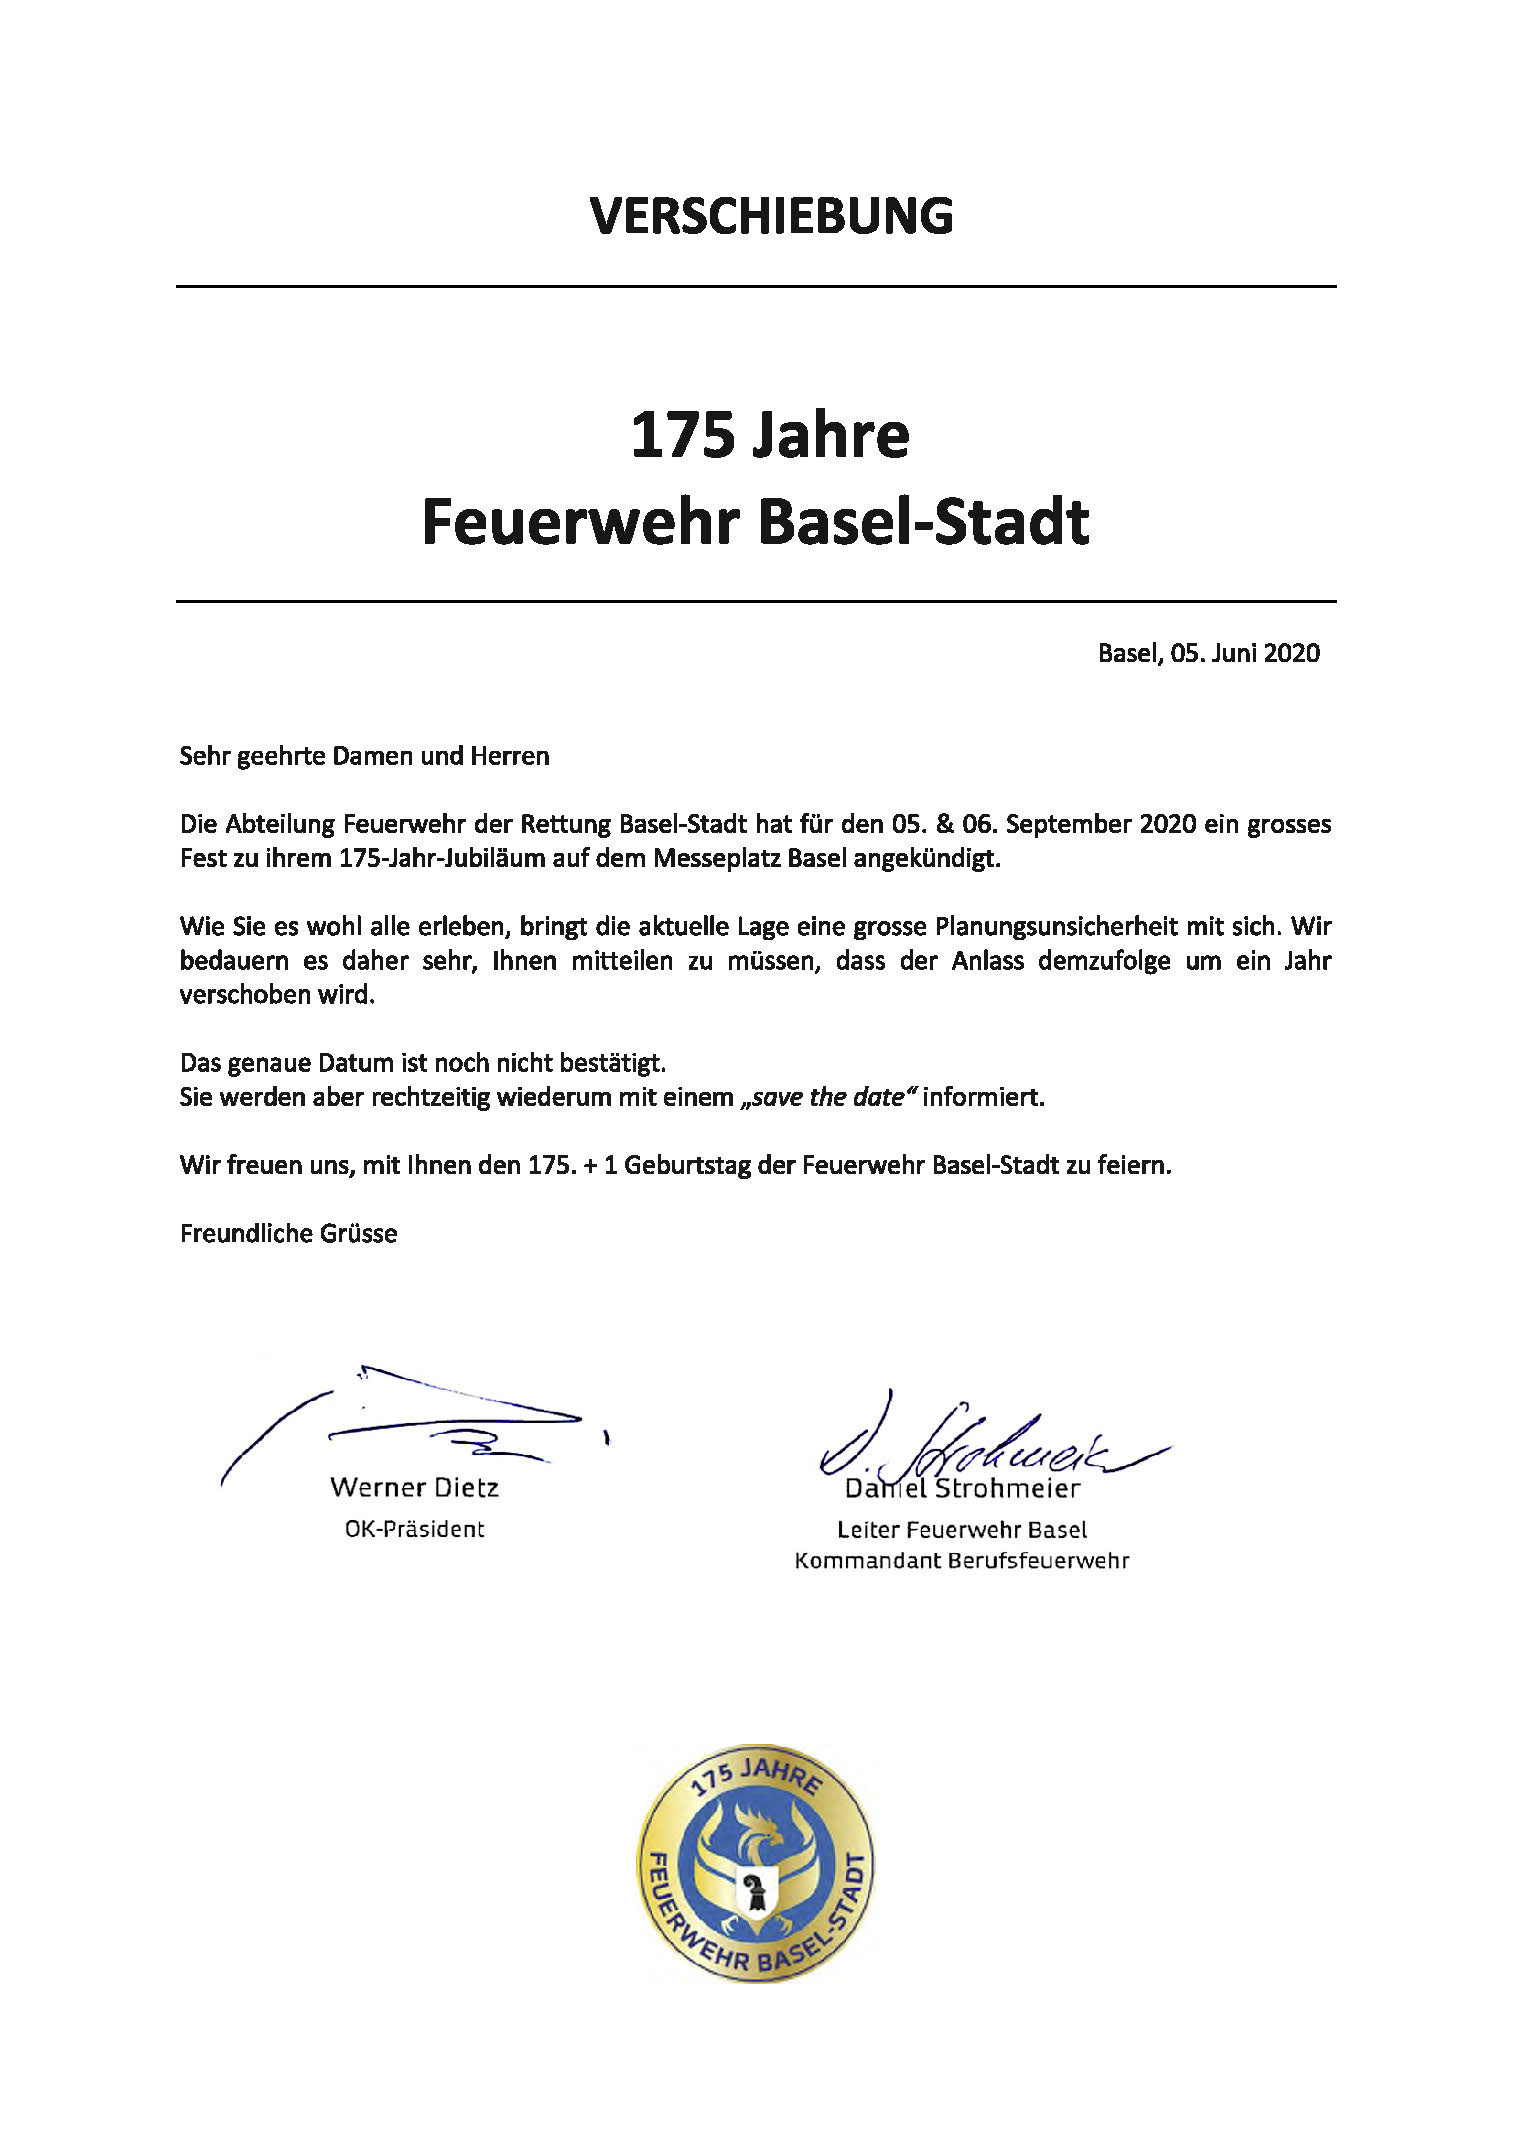 Read more about the article 175 Jahre Feuerwehr Basel wird verschoben!